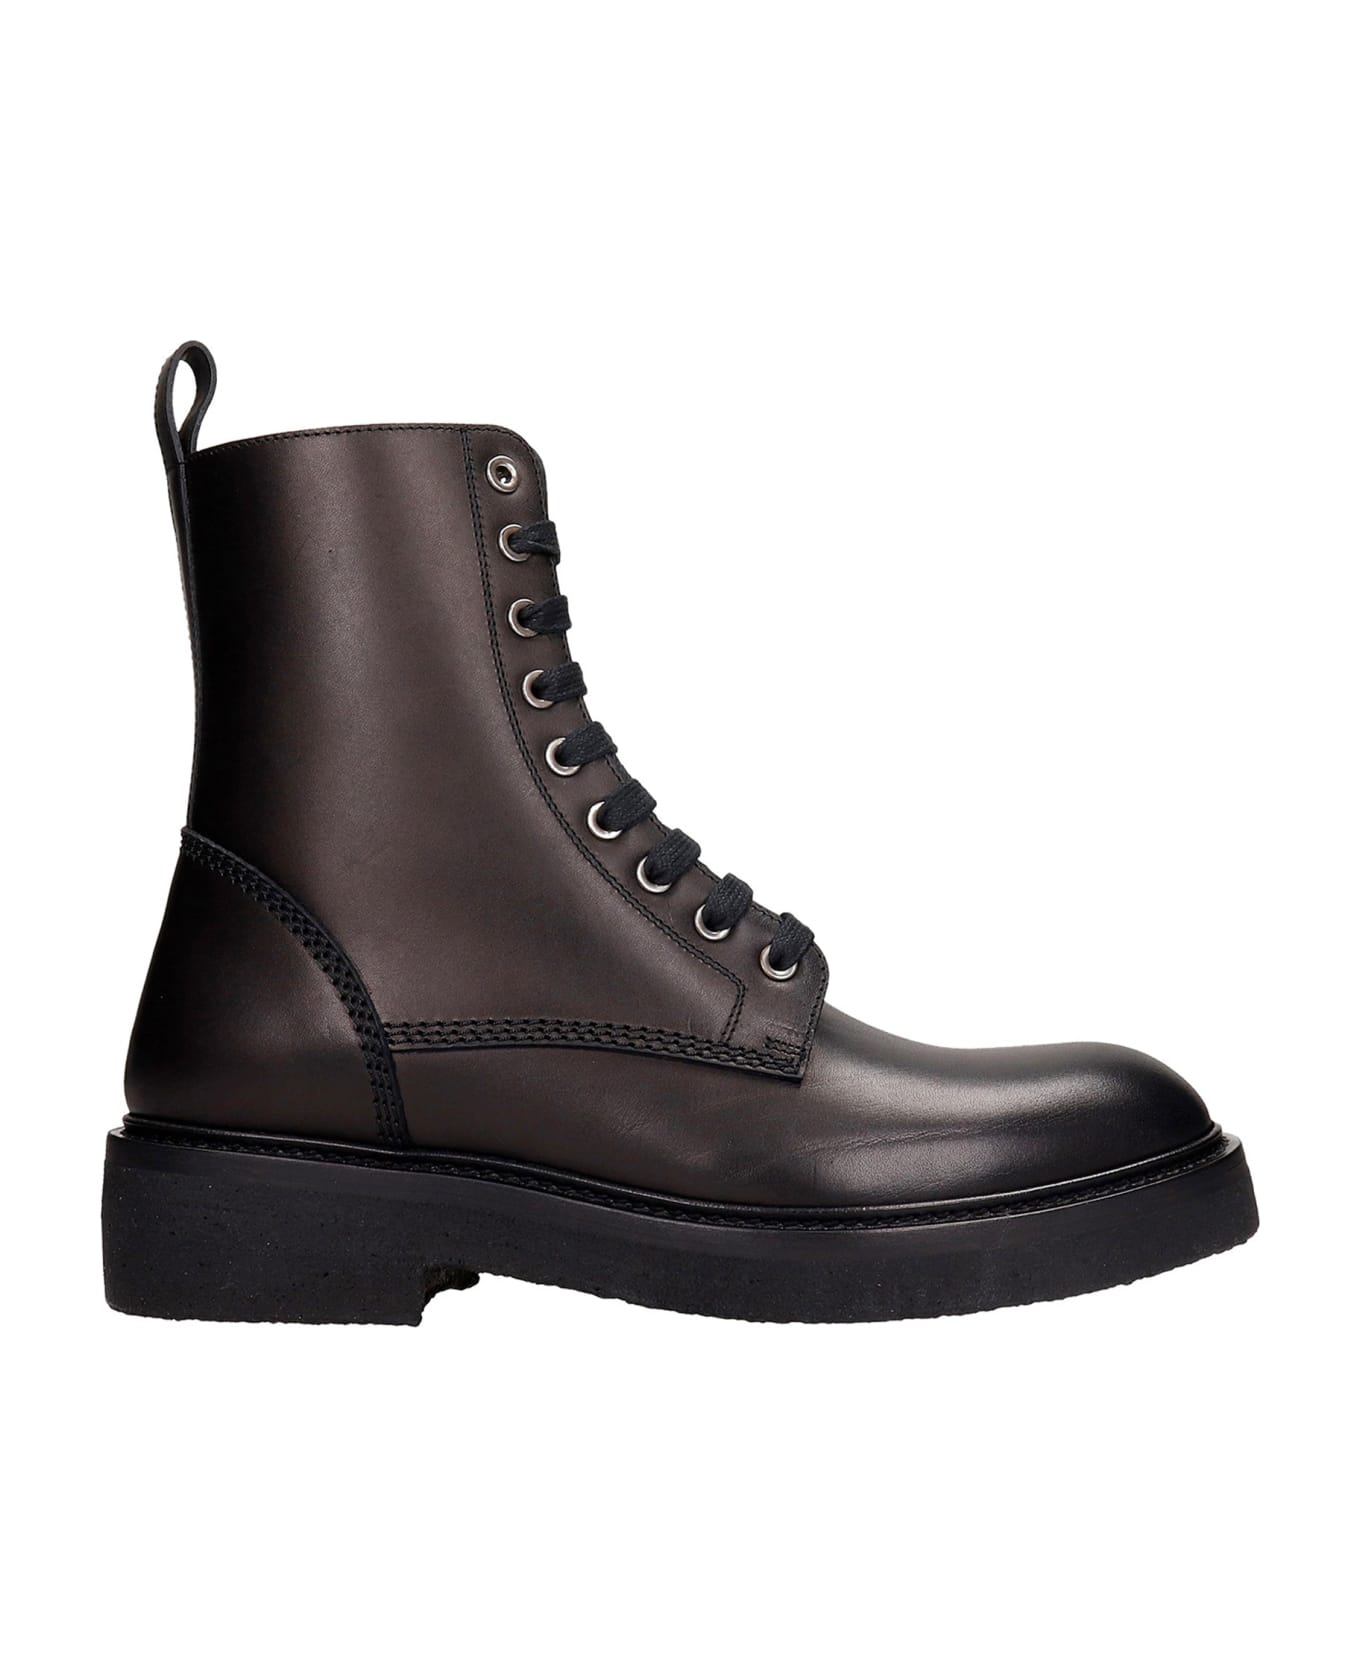 AMIRI Leather Boots - Black ブーツ